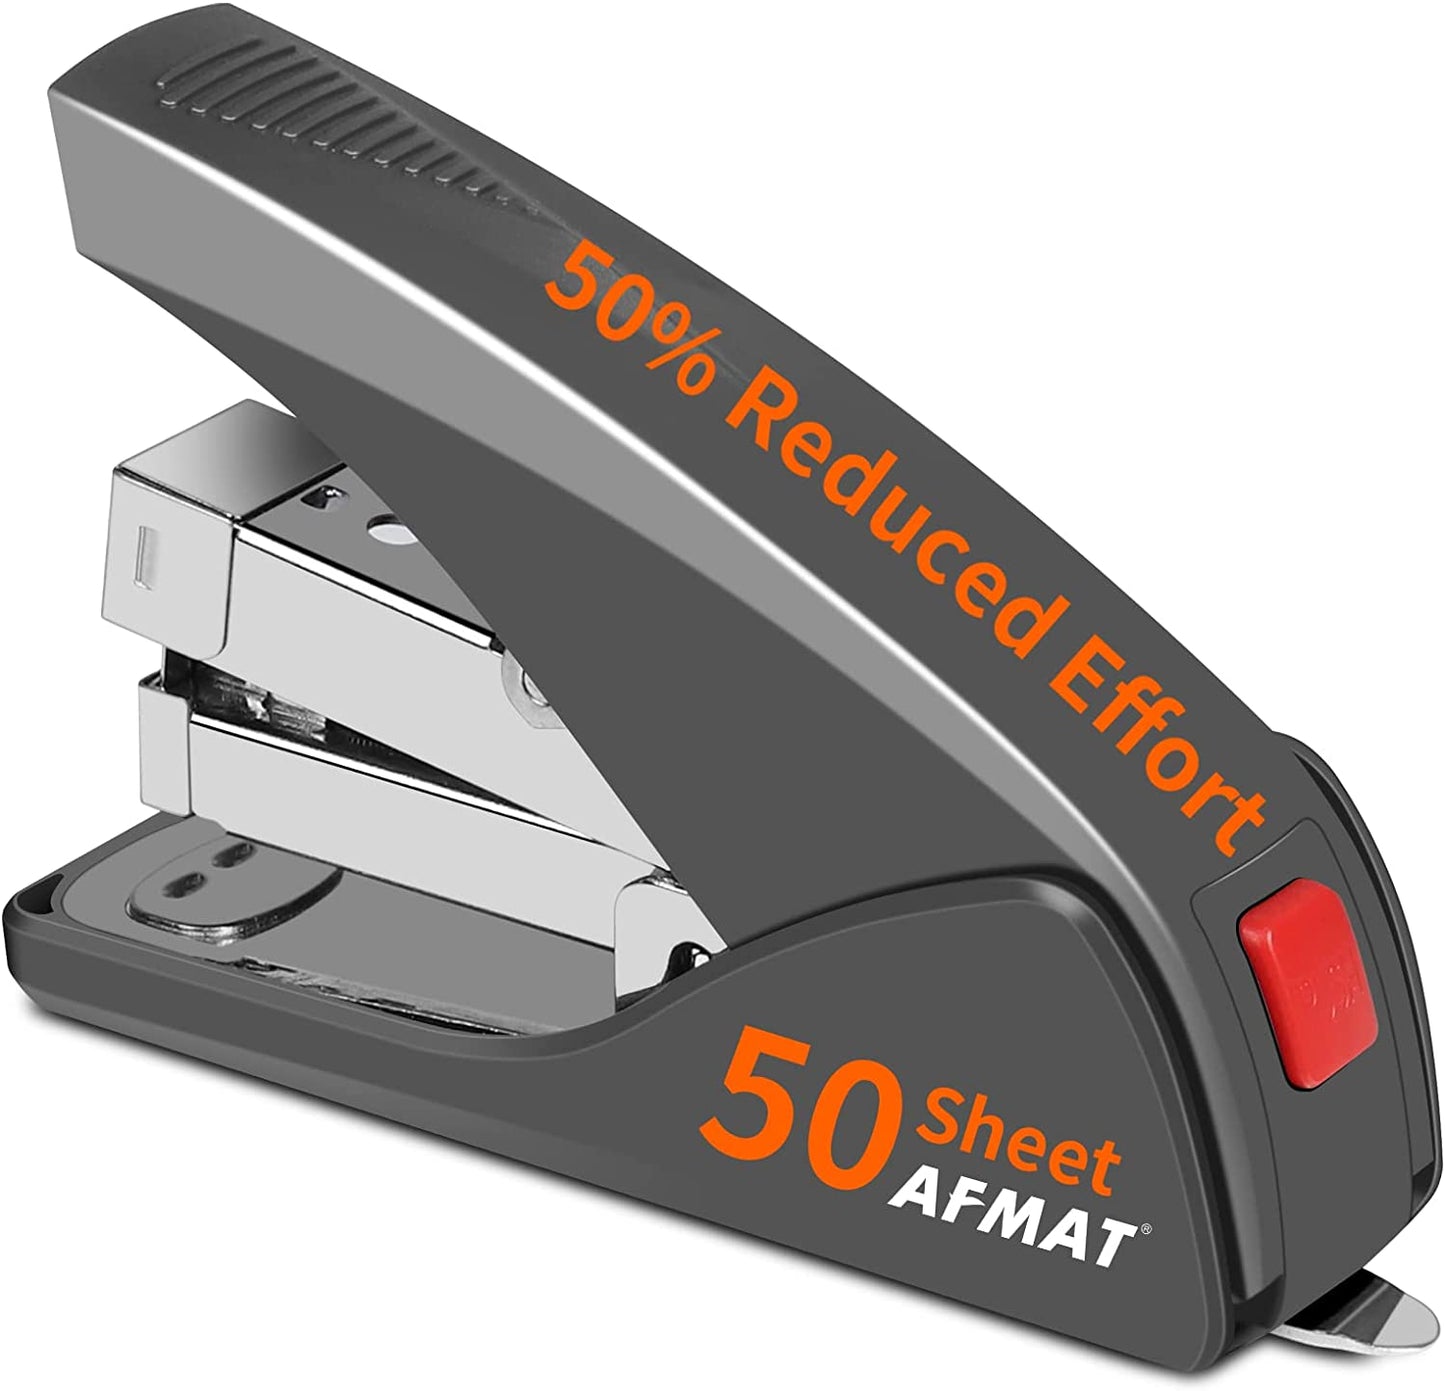 Copy of AFMAT Stapler, Staplers for Desk,50 Sheet Capacity Staplers Office Heavy Duty, Reduced 50% Effort Stapler-ES10